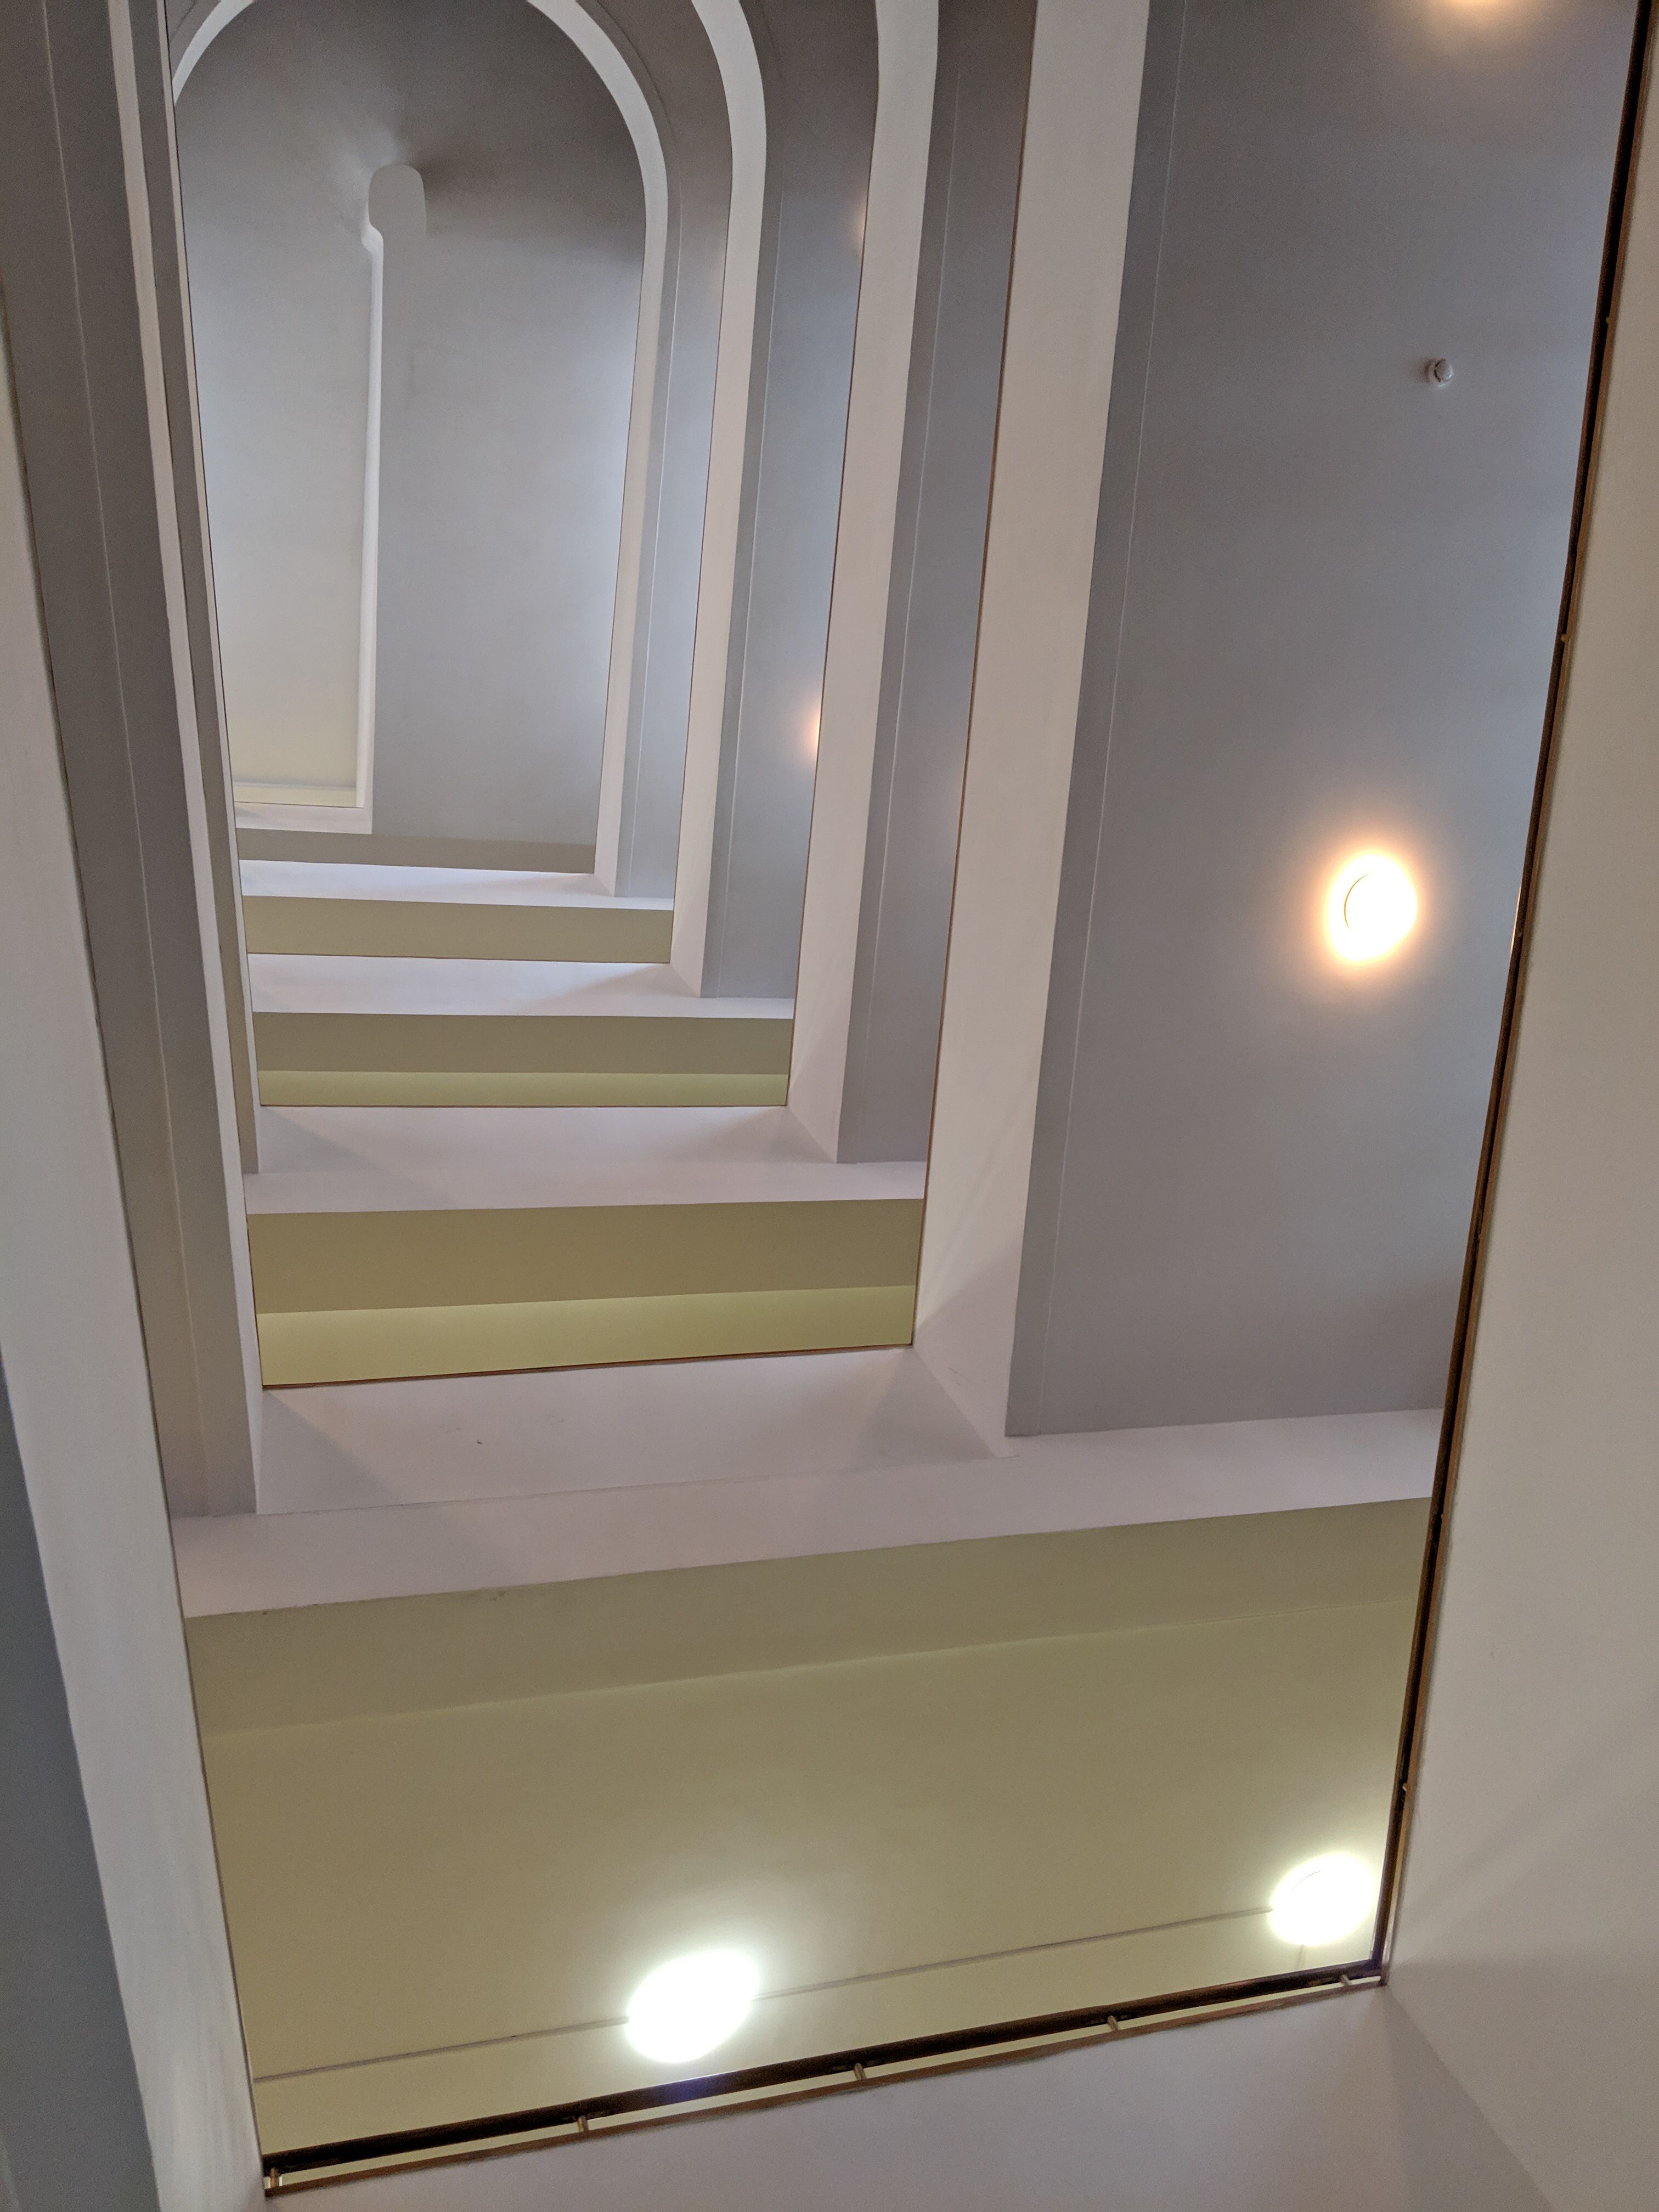 seven-floor walkway, very nice shades play